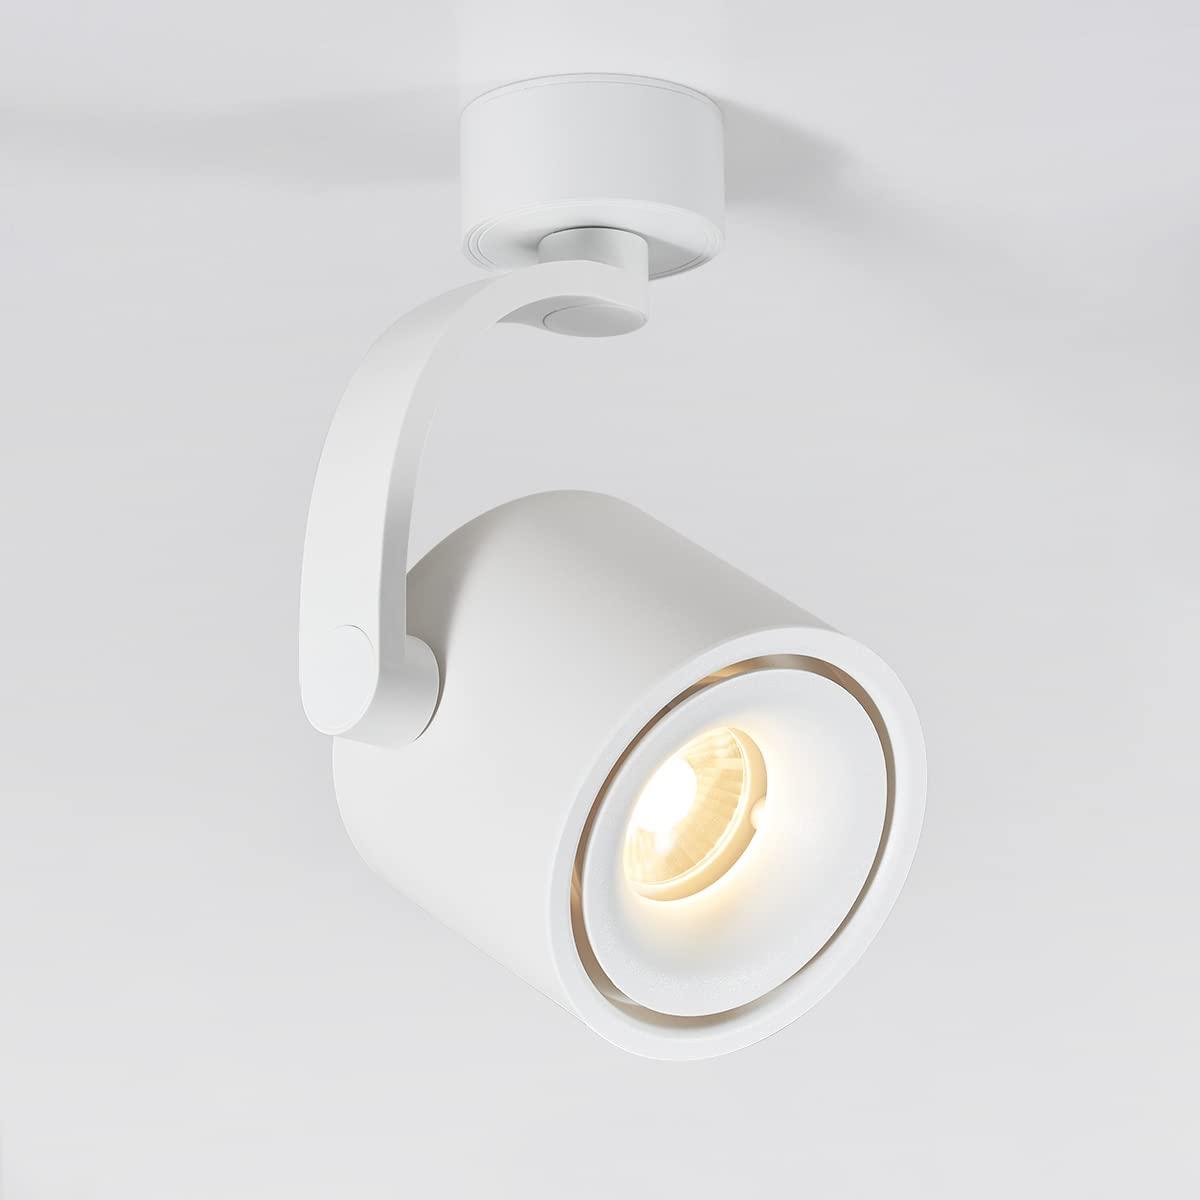 HAOFU Pendant Lamp Holder, White Modern Gloss White Adjustable Plate Ceiling Spotlight